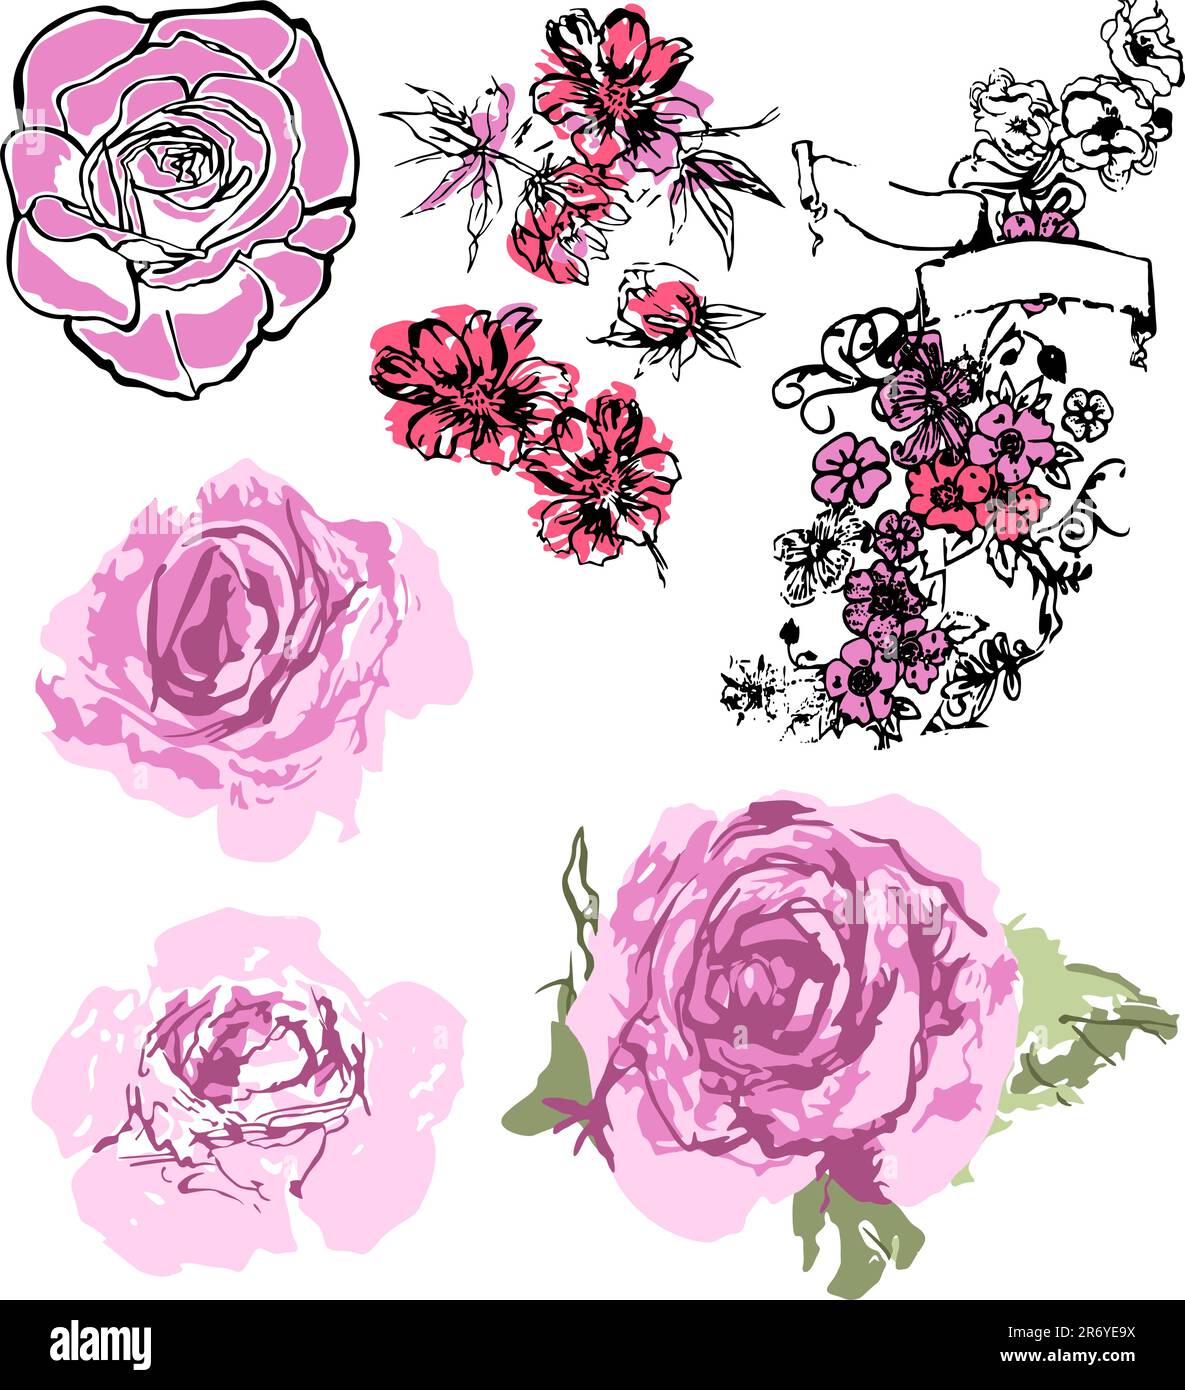 illustrazione di fiori in stile diverso Illustrazione Vettoriale